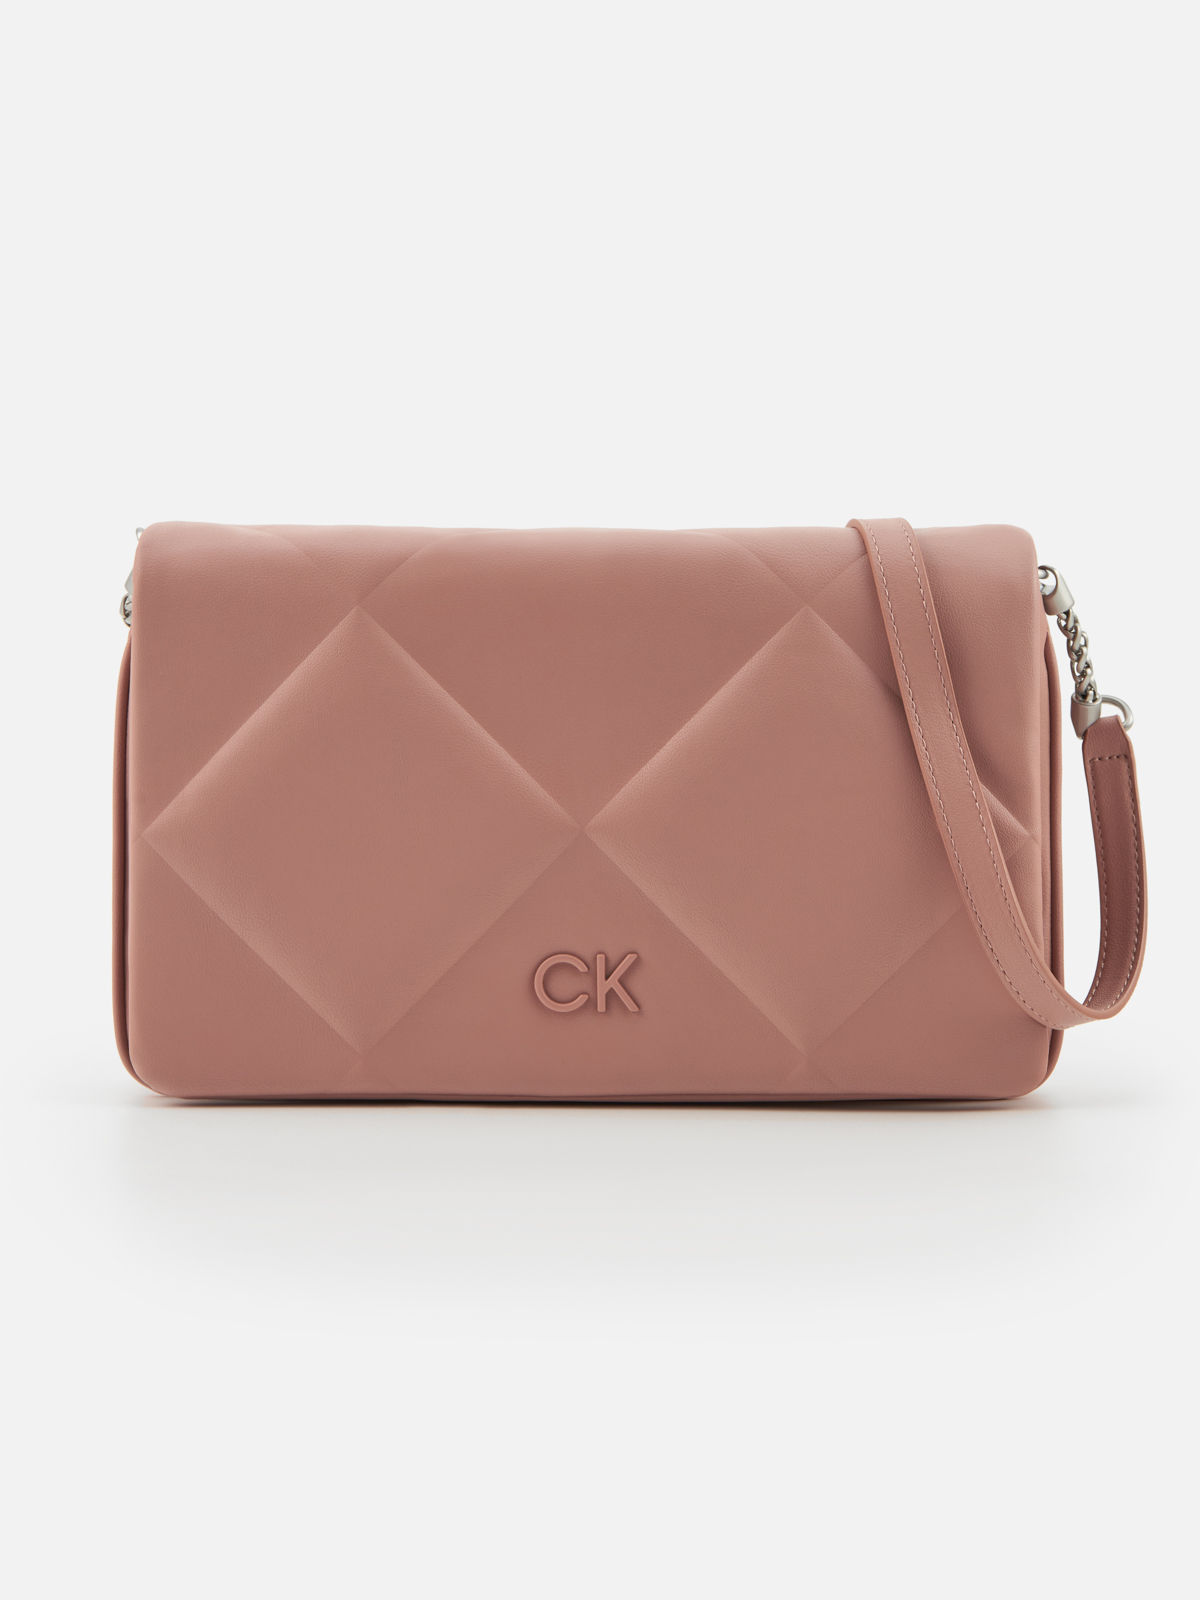 Сумка Calvin Klein для женщин, на плечо, размер OS, розовая-VB8, K60K611021